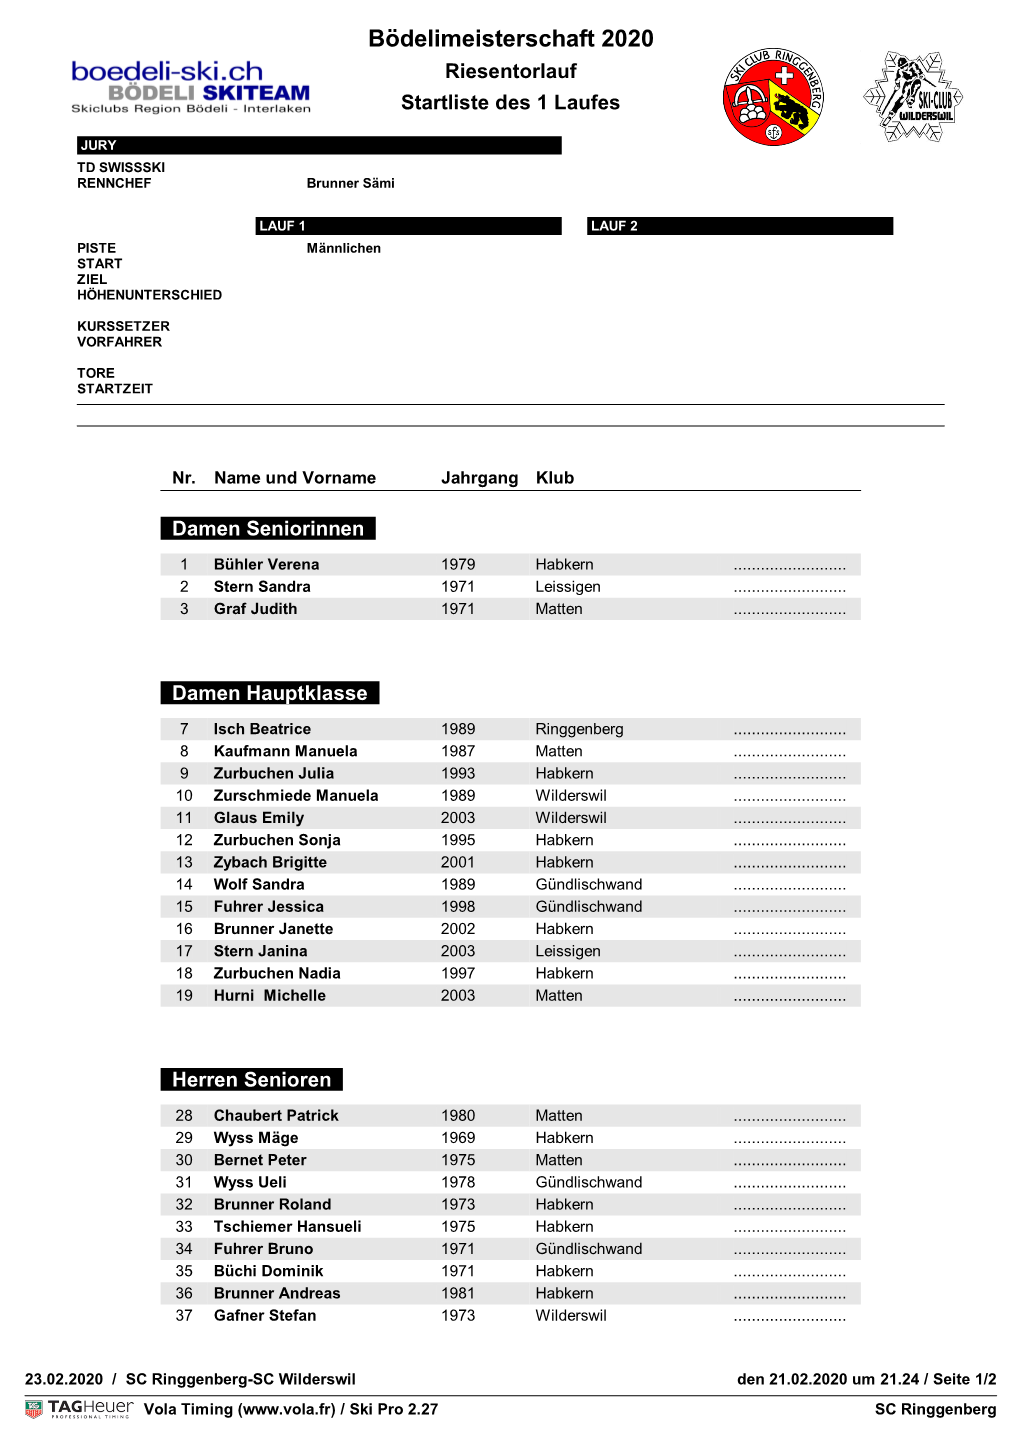 Bödelimeisterschaft 2020 Riesentorlauf Startliste Des 1 Laufes